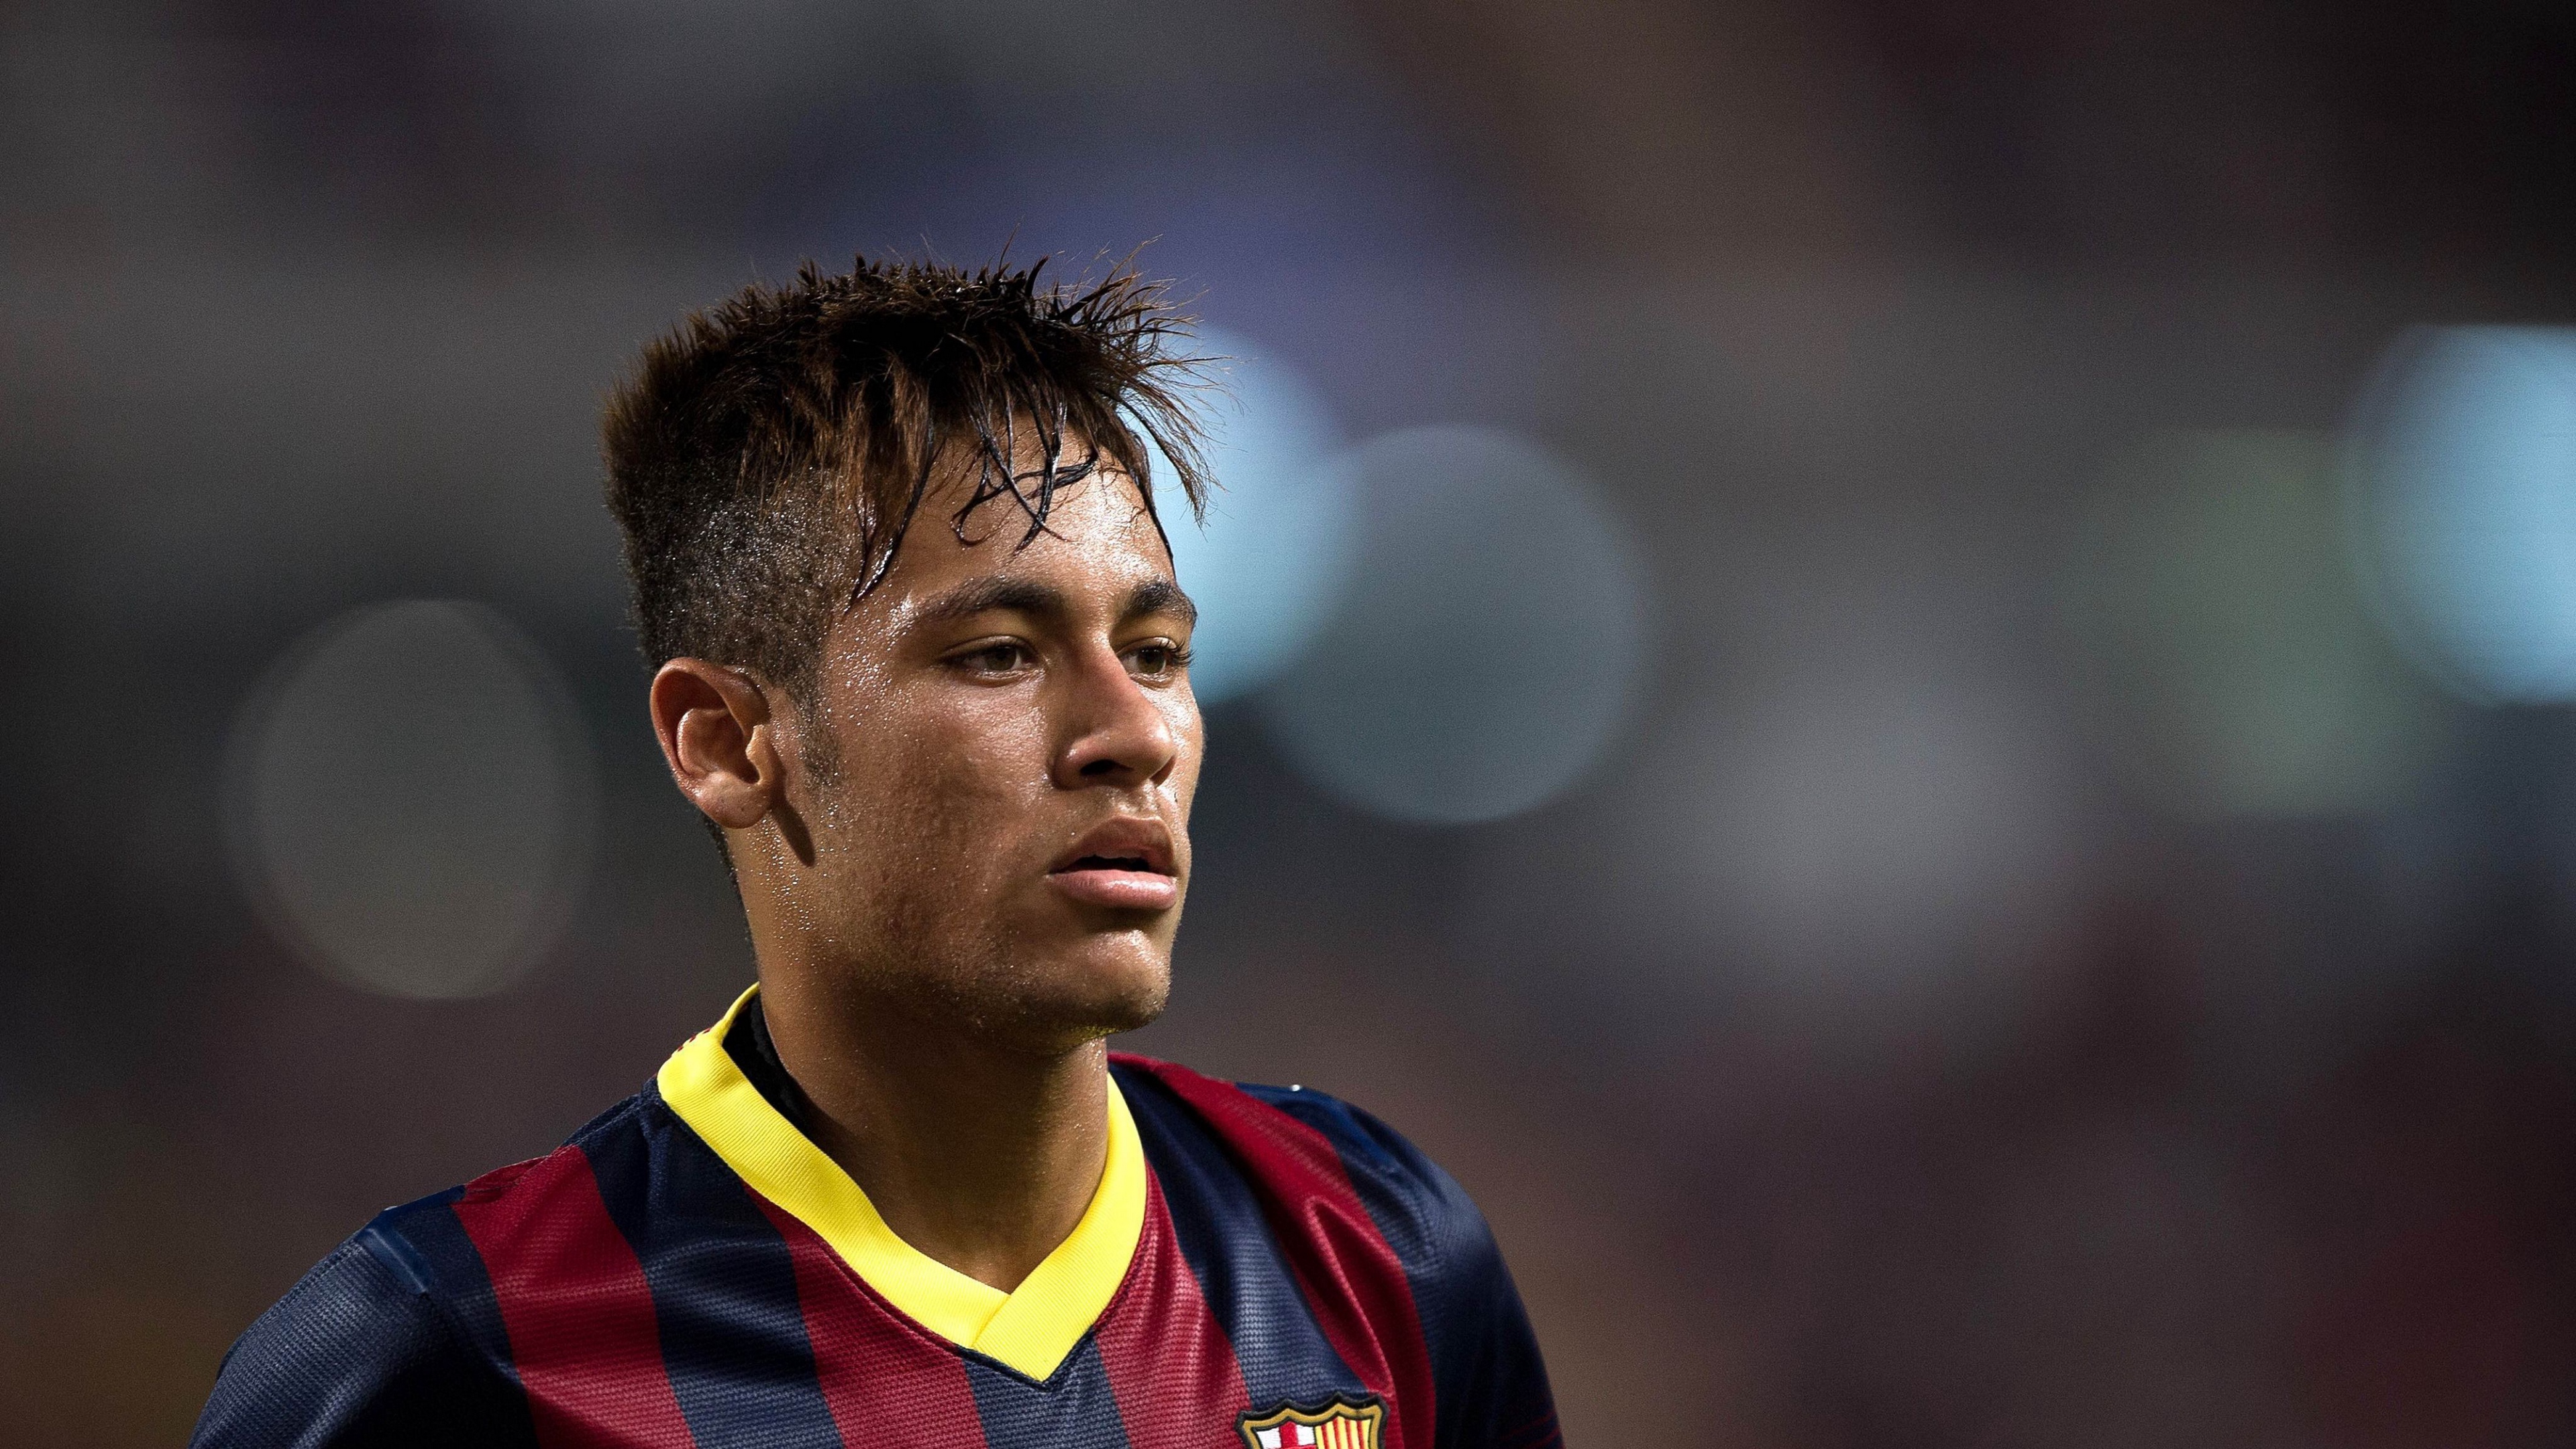 neymar brazilian footballer barcelona 4k 1540063059 - neymar, brazilian footballer, barcelona 4k - Neymar, brazilian footballer, Barcelona